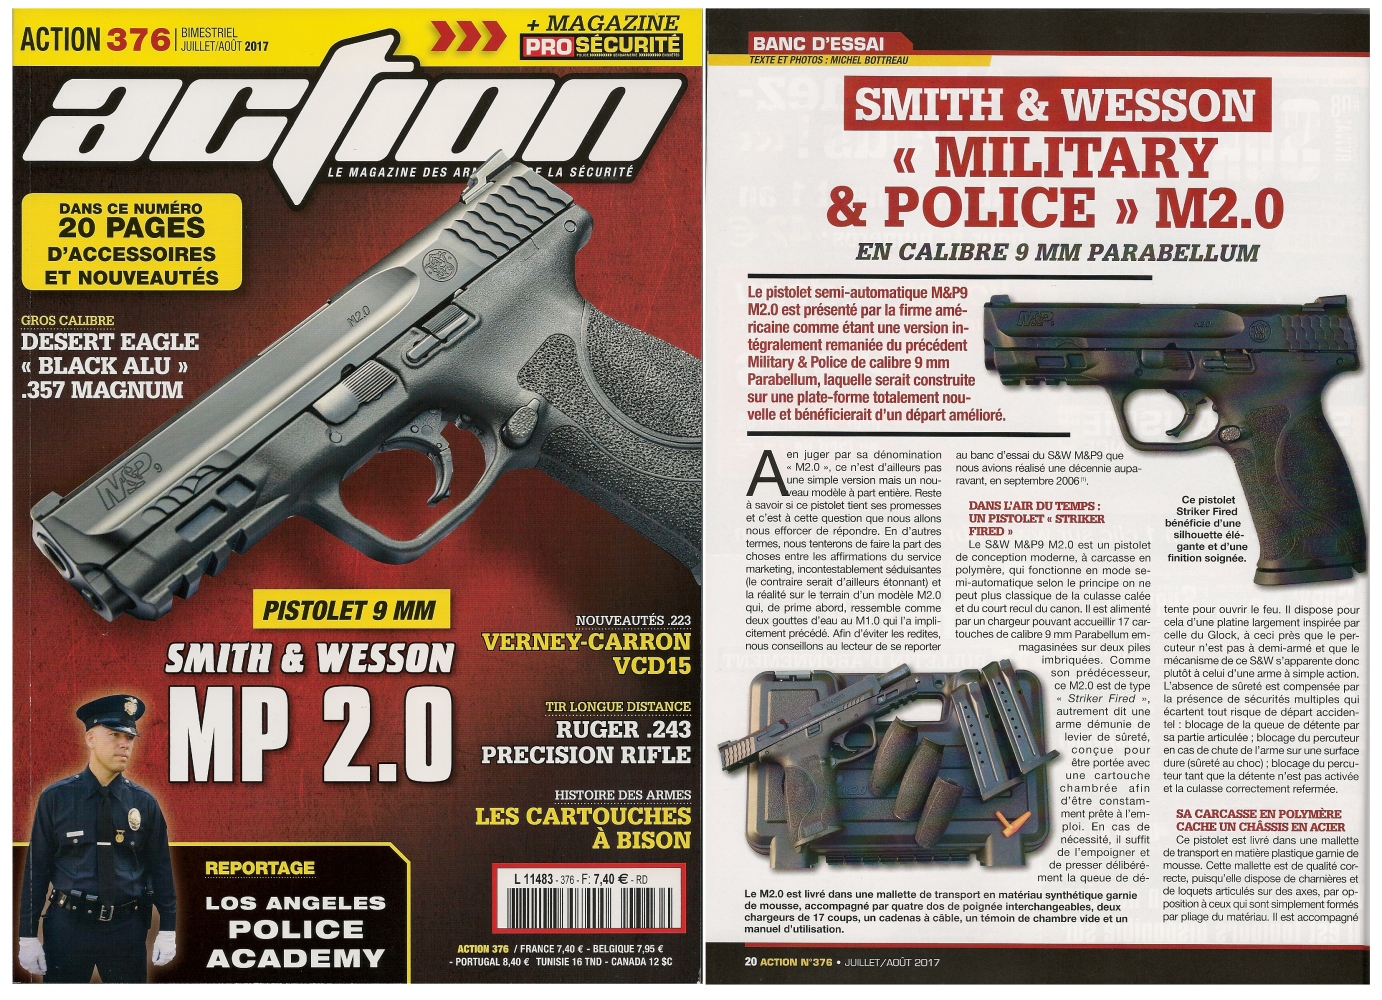 Le banc d’essai du pistolet Smith & Wesson M&P M2.0 a été publié sur 6 pages dans le magazine Action n° 376 (juillet/août 2017). 